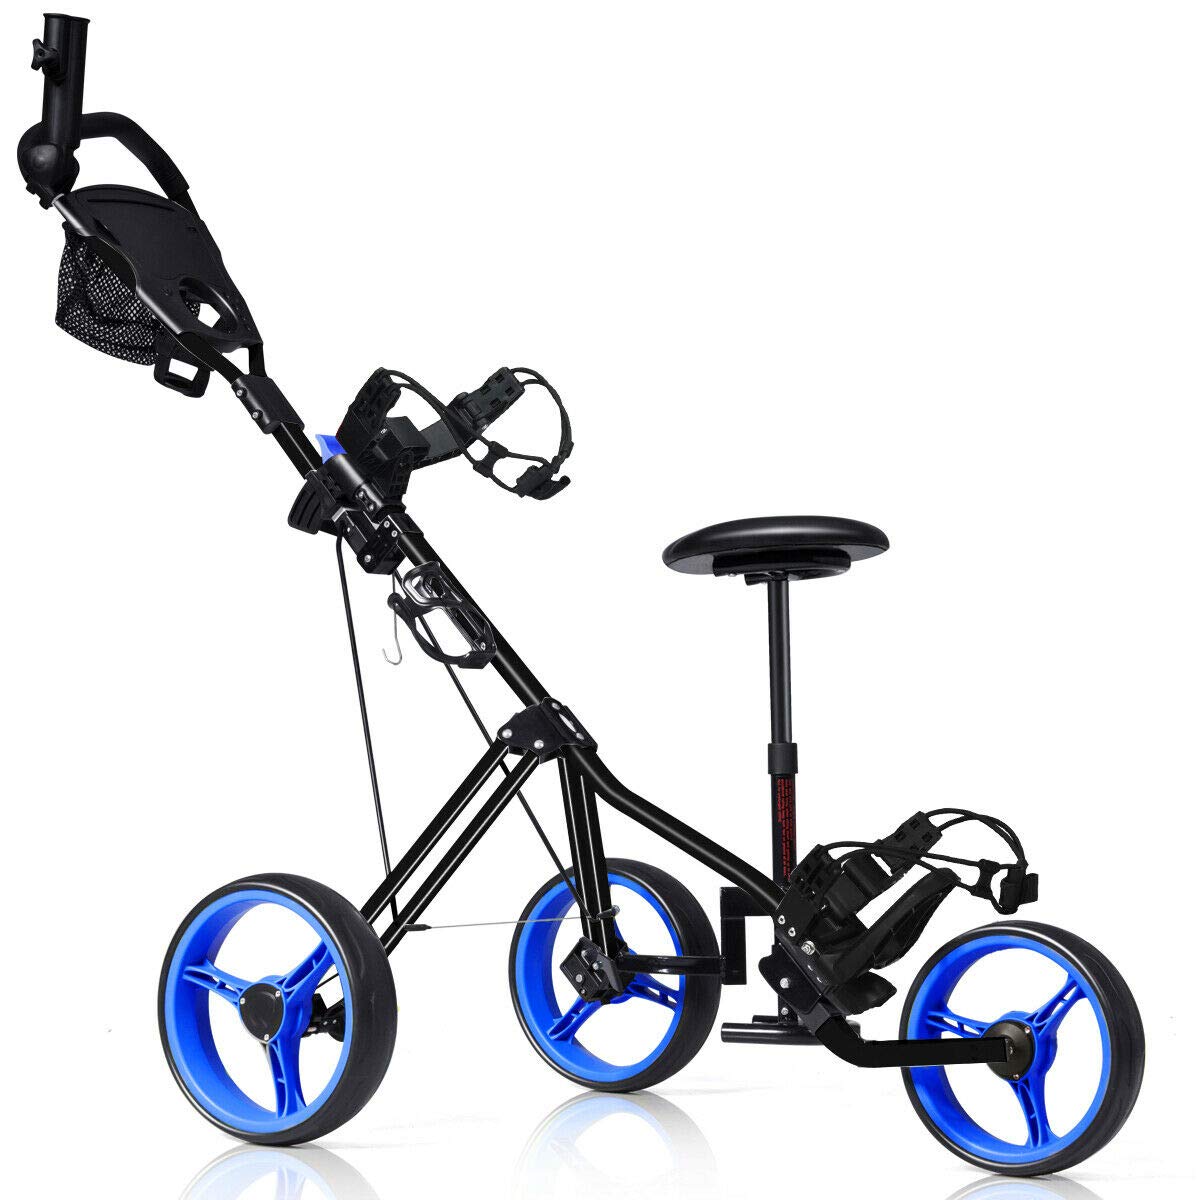 Tangkula Golf Push Cart with Seat